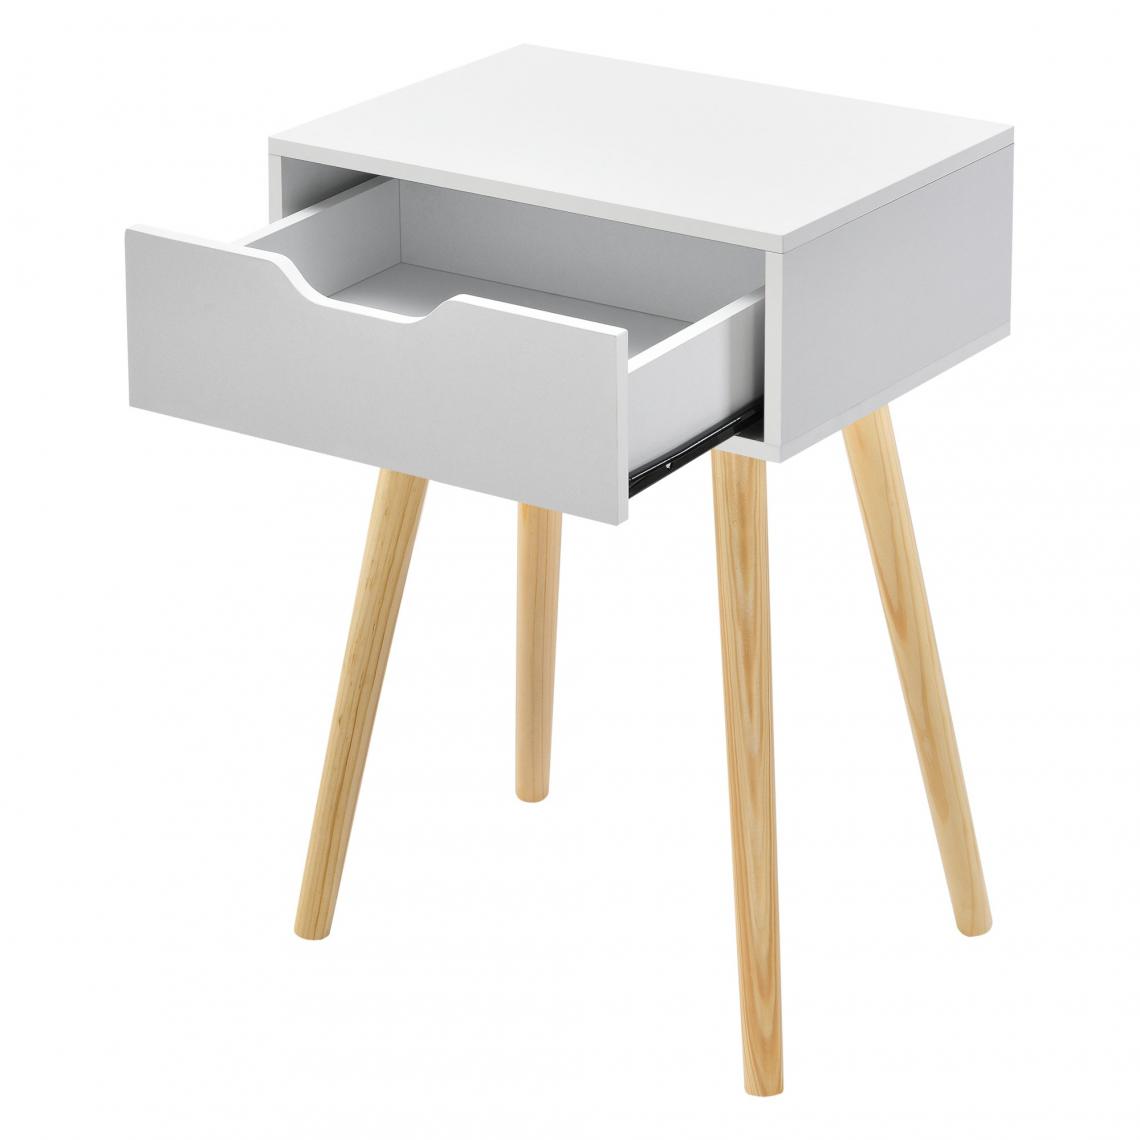 Helloshop26 - Table basse pour salon meuble design avec tiroir PVC 60 cm blanc 03_0006161 - Tables basses